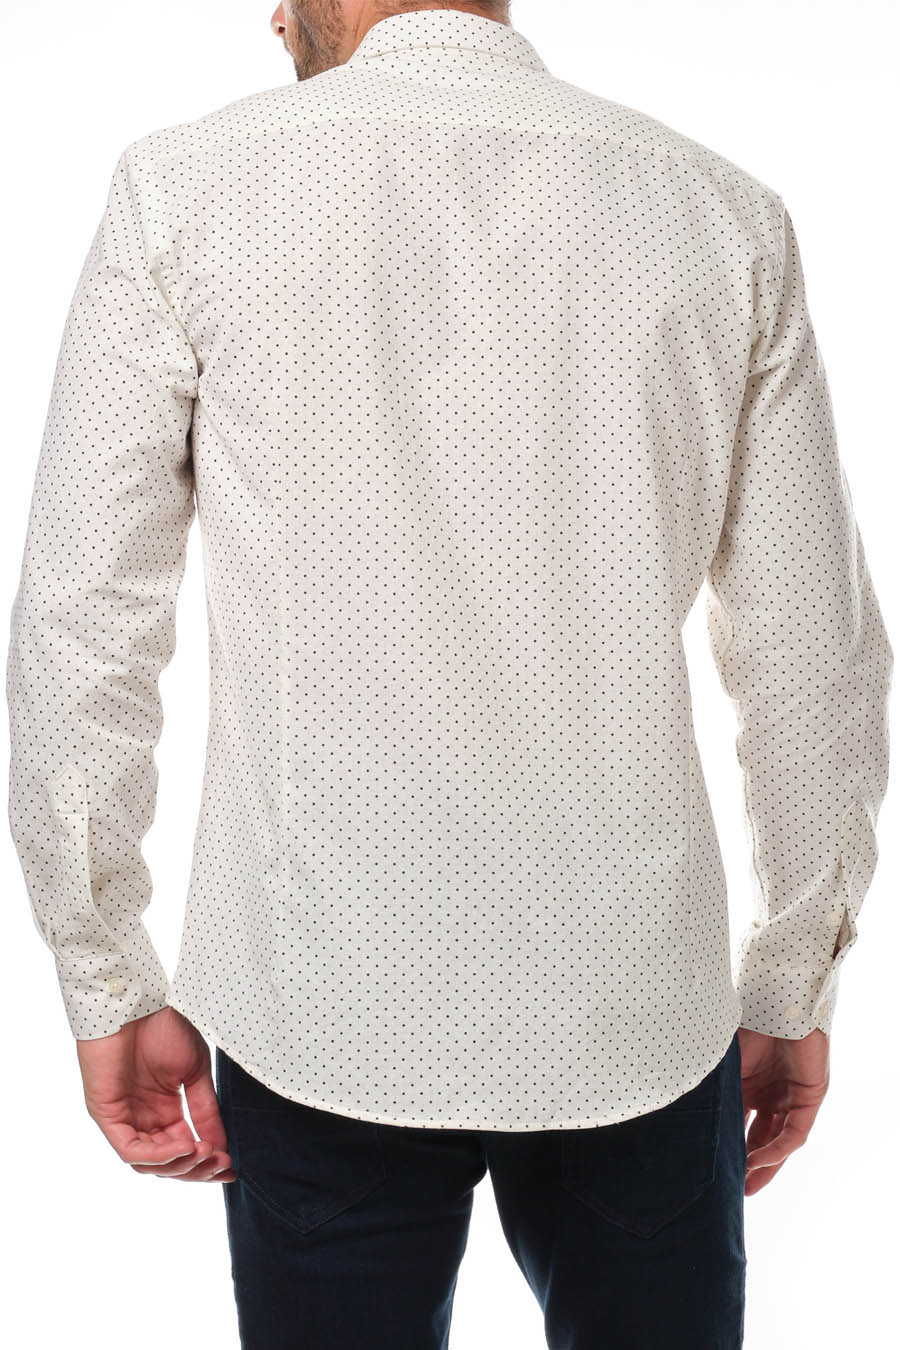 Ανδρικό πουκάμισο Andreas, Λευκό 4